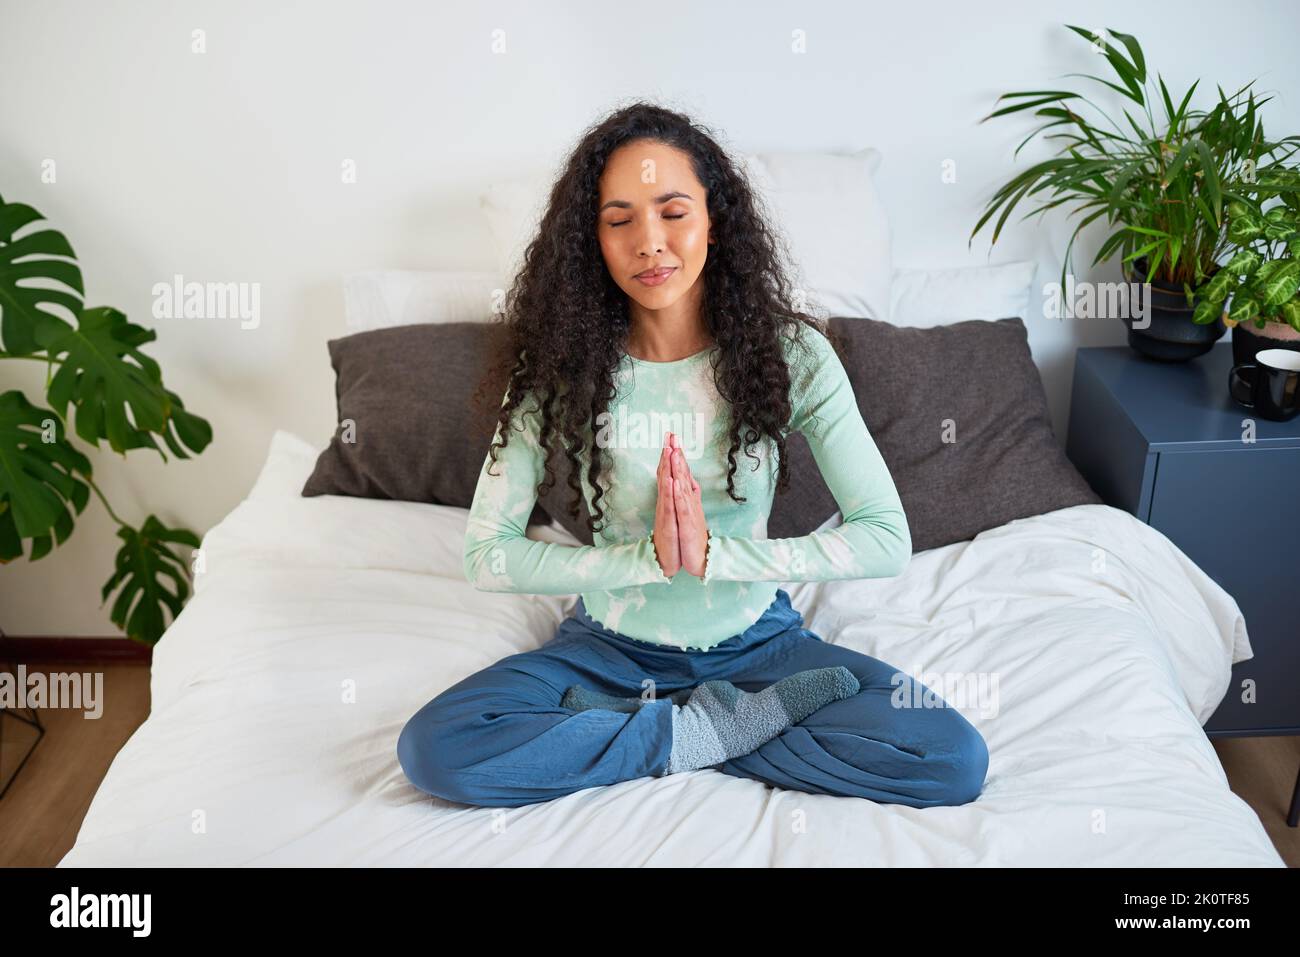 Une jeune femme multiethnique est assise sur un lit aux pieds croisés avec les mains en posture de prière Banque D'Images